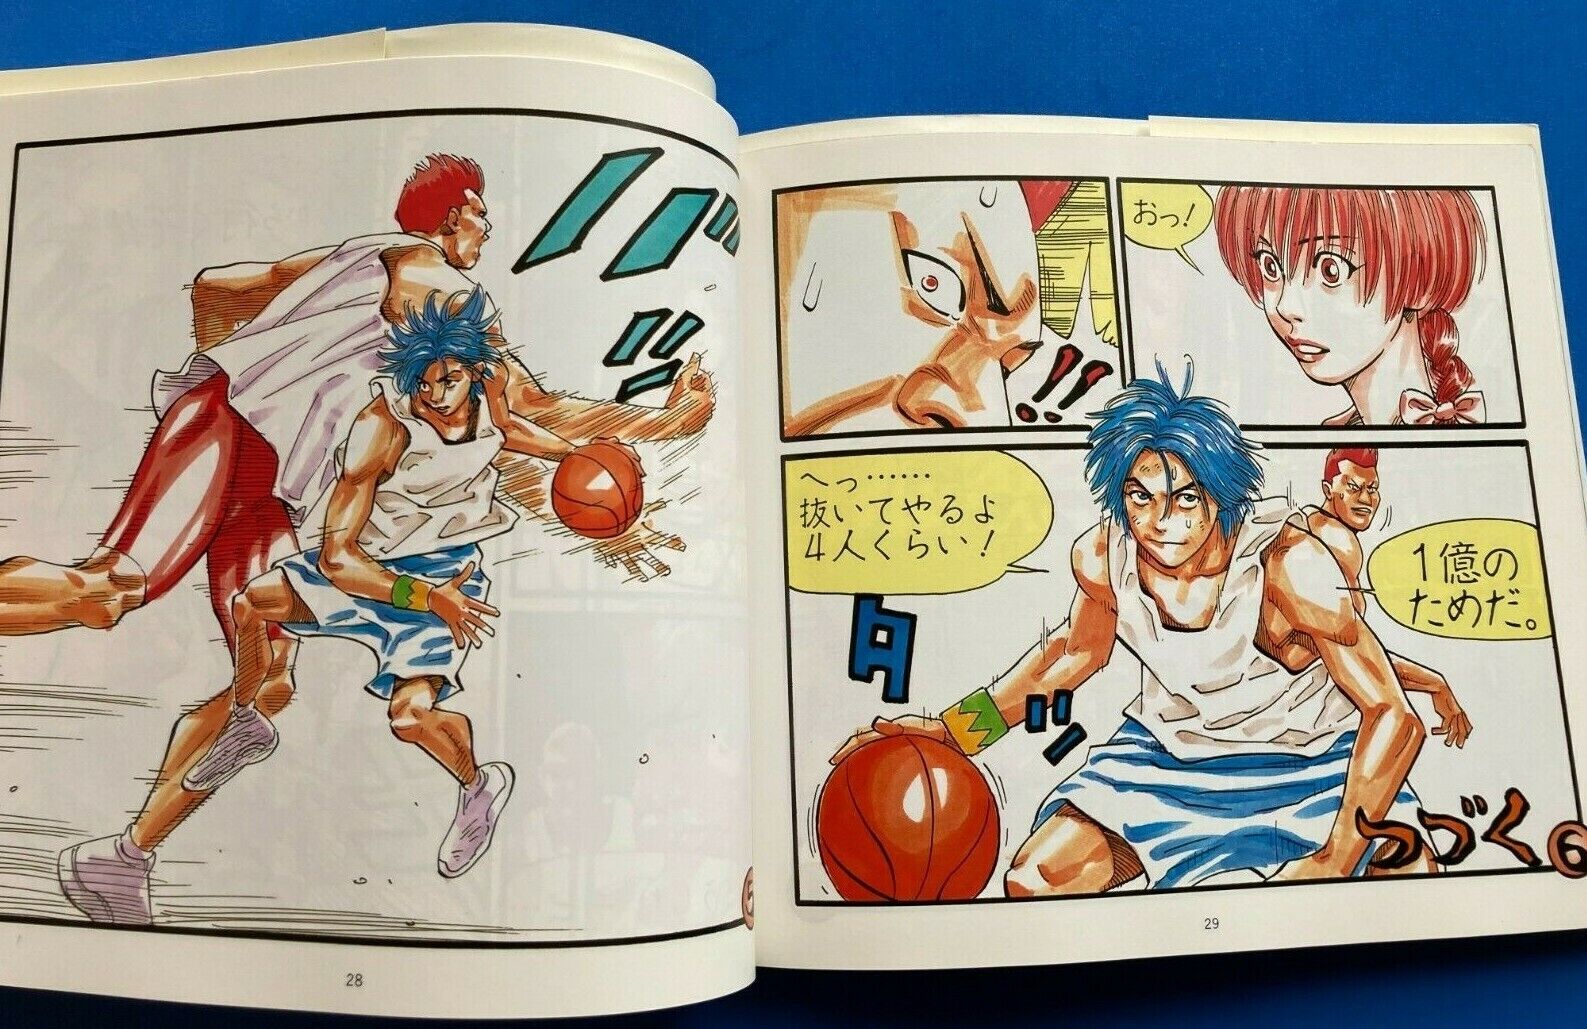 Inoue Takehiko's Buzzer Beater Vol. 2